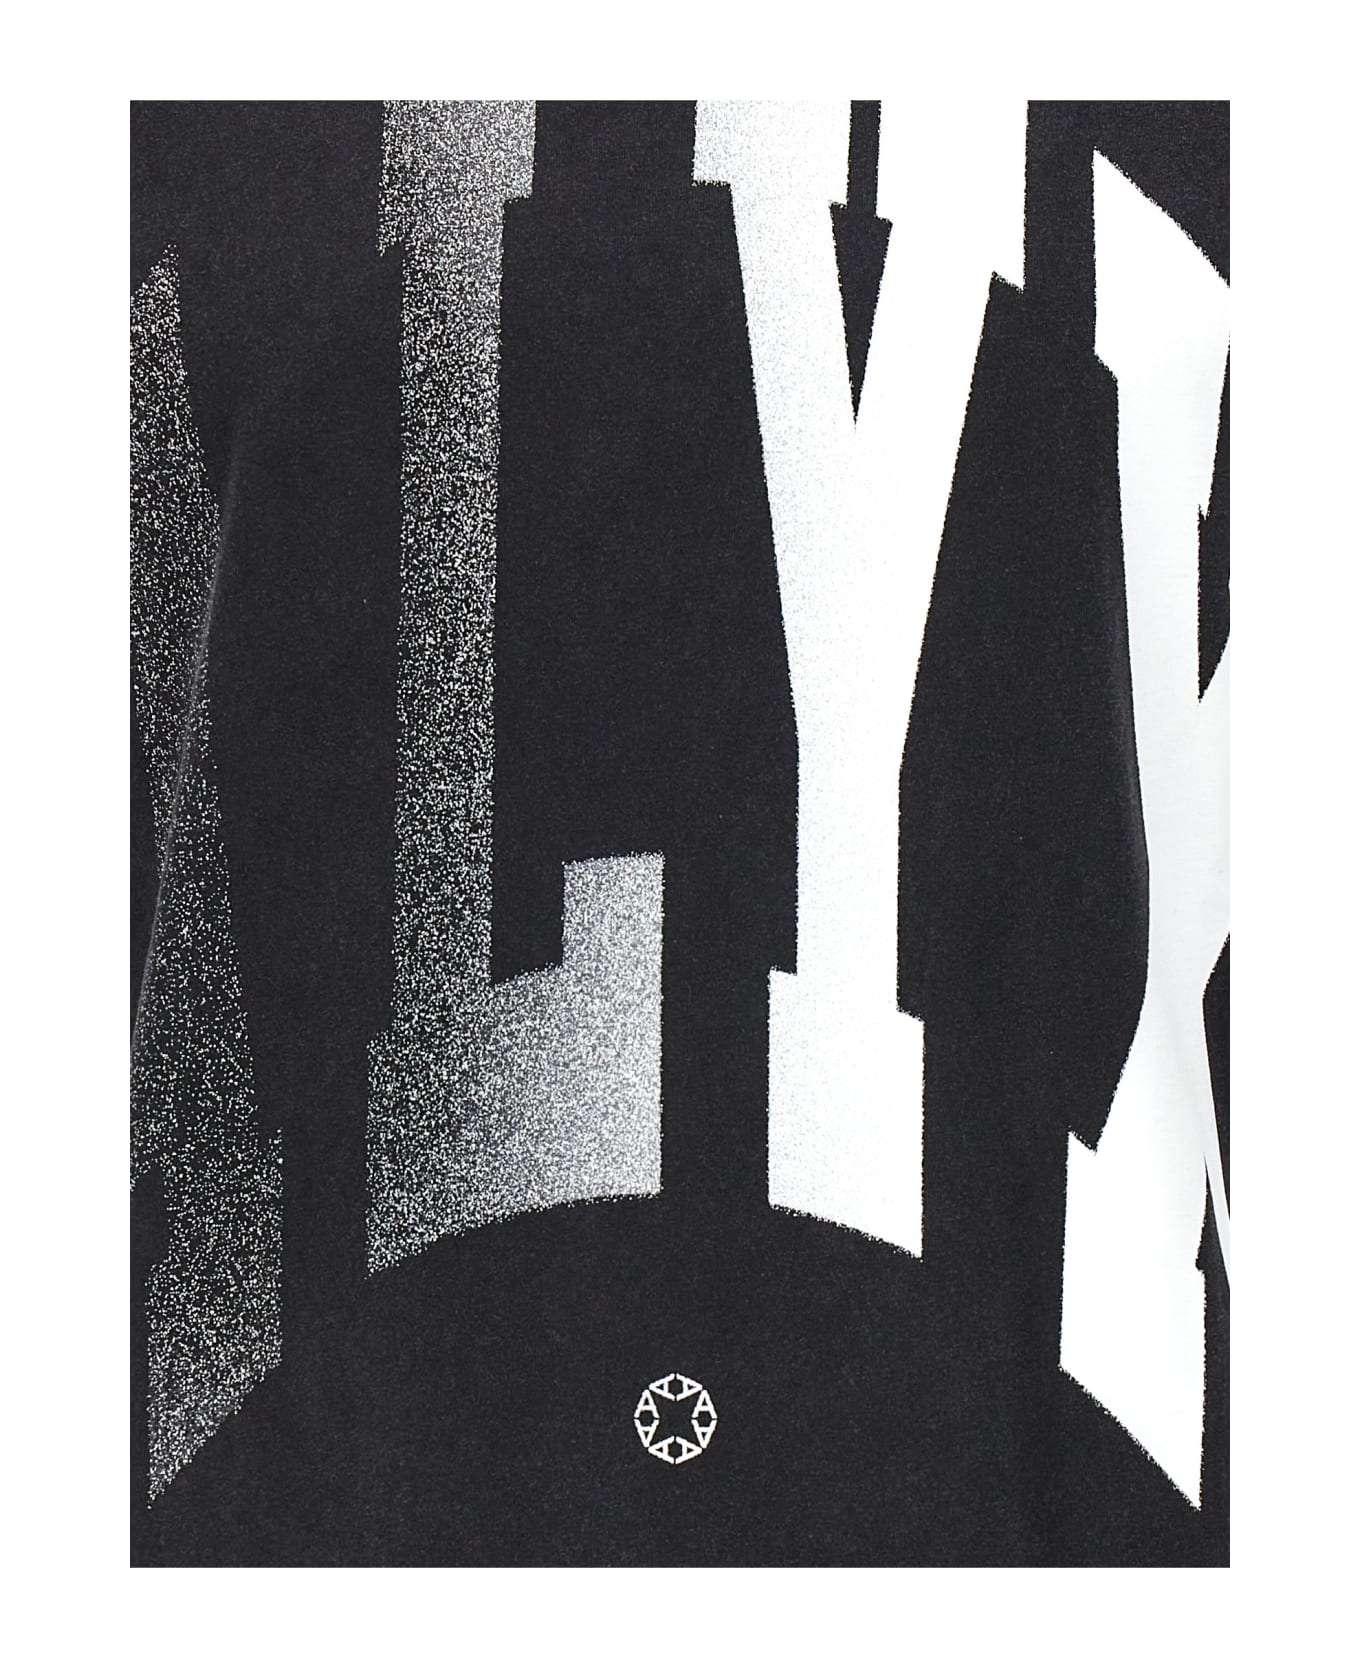 1017 ALYX 9SM 'alyx Logo Print' T-shirt - Black